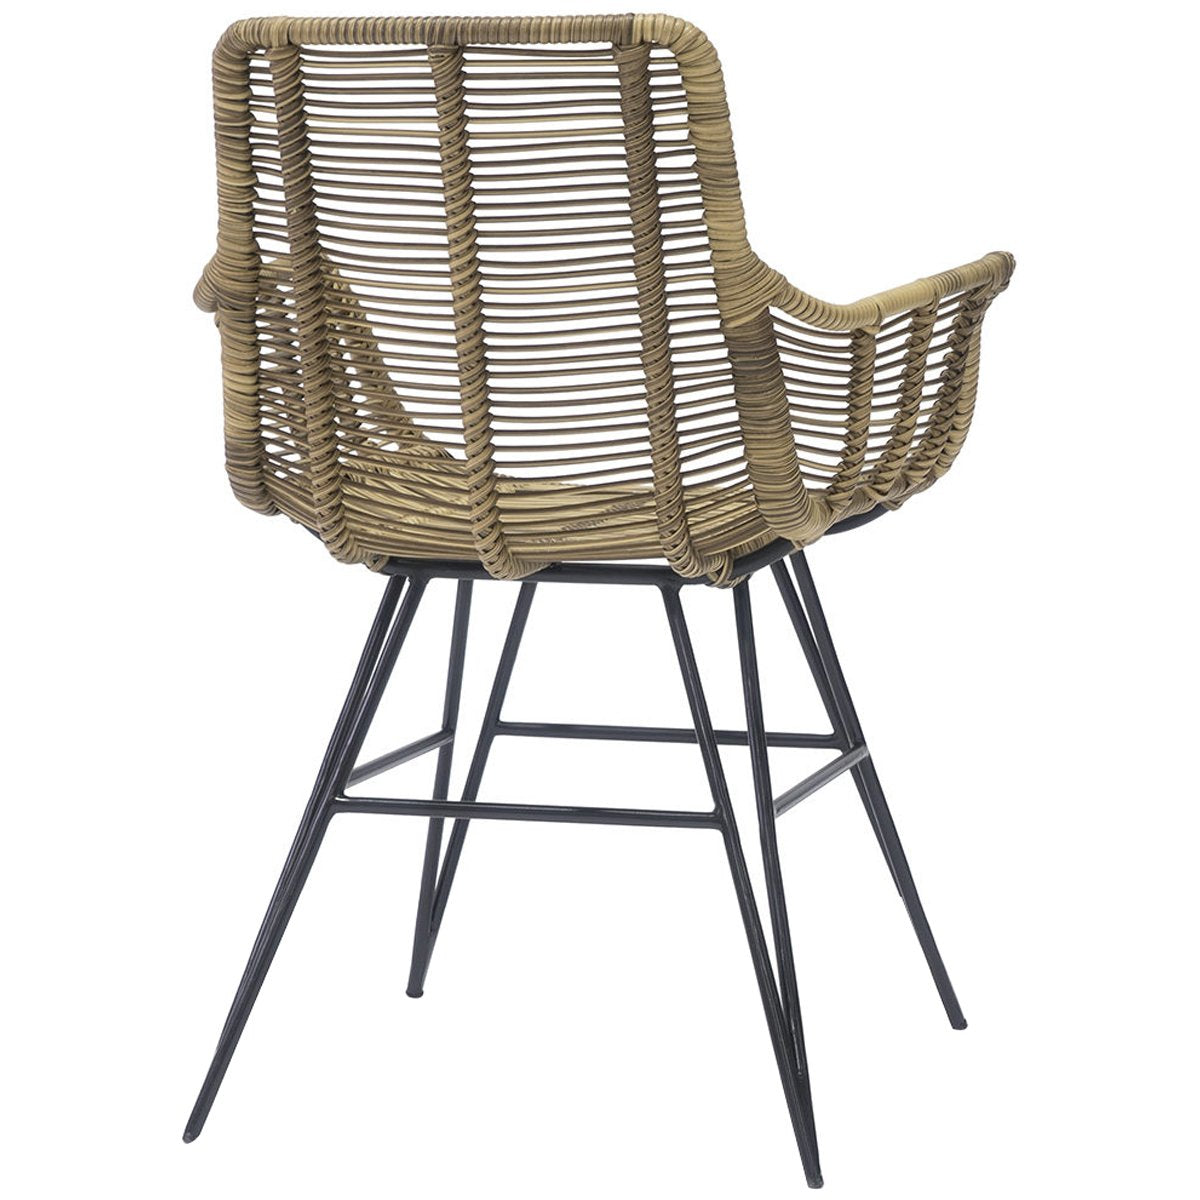 Palecek Hermosa Outdoor Arm Chair